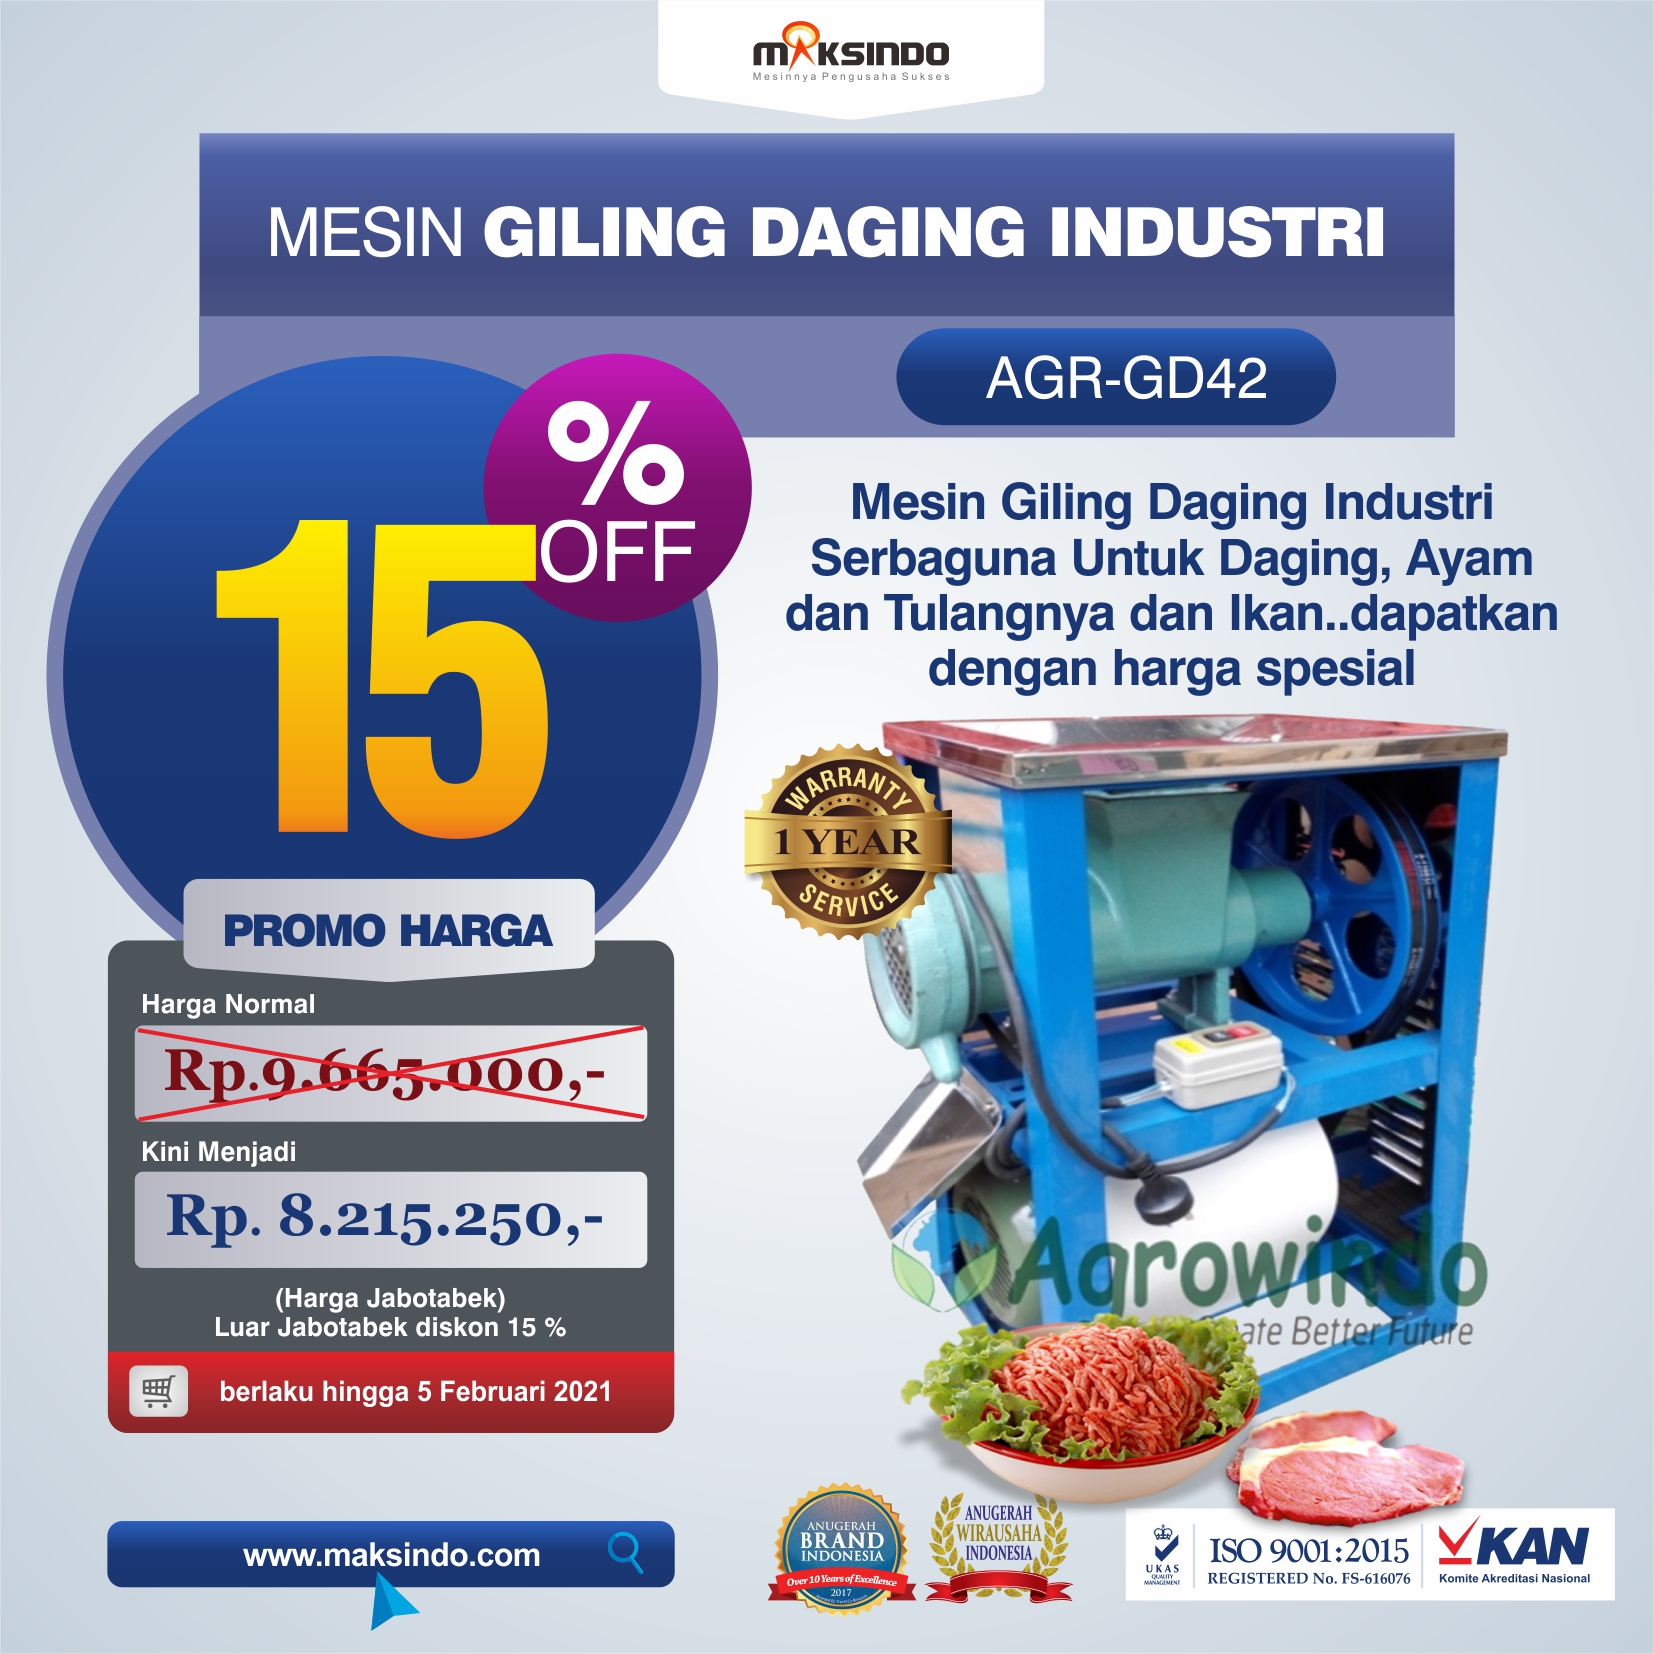 Jual Mesin Giling Daging Industri (AGR-GD42) di Medan